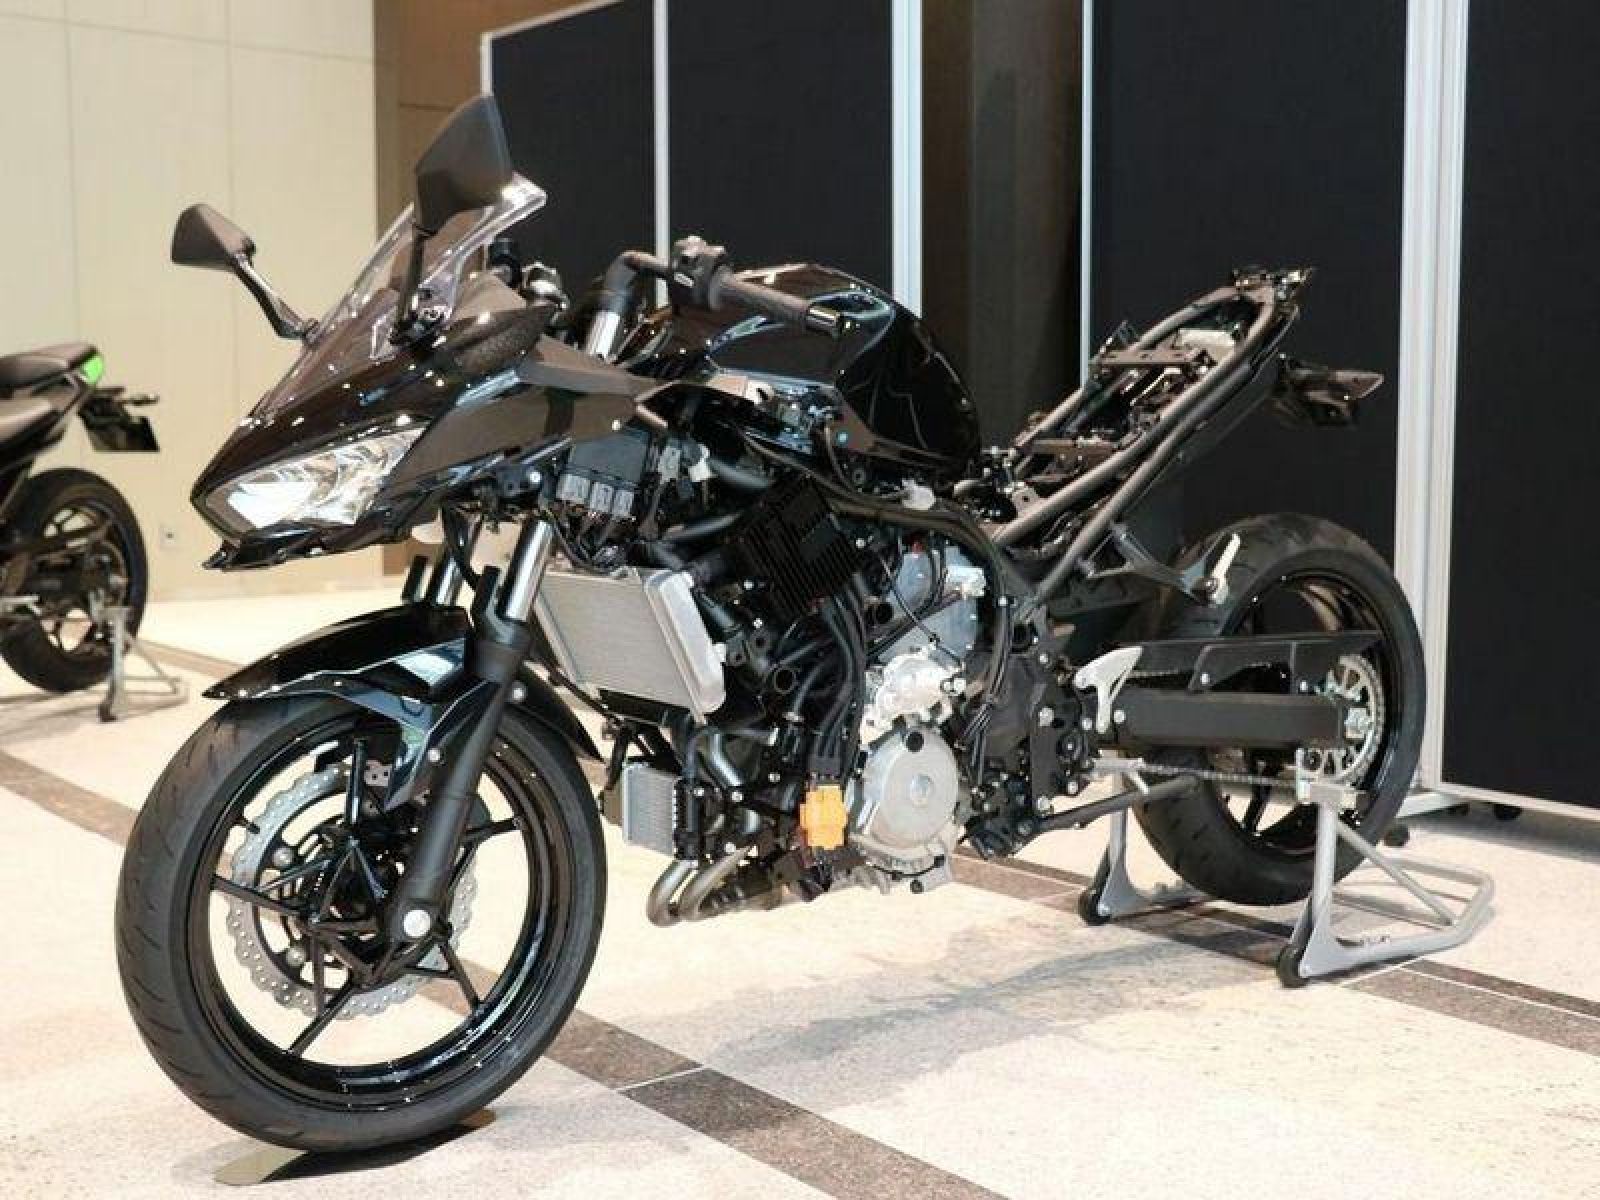 Kawasaki i Yamaha zajedno rade na vodoničnom agregatu